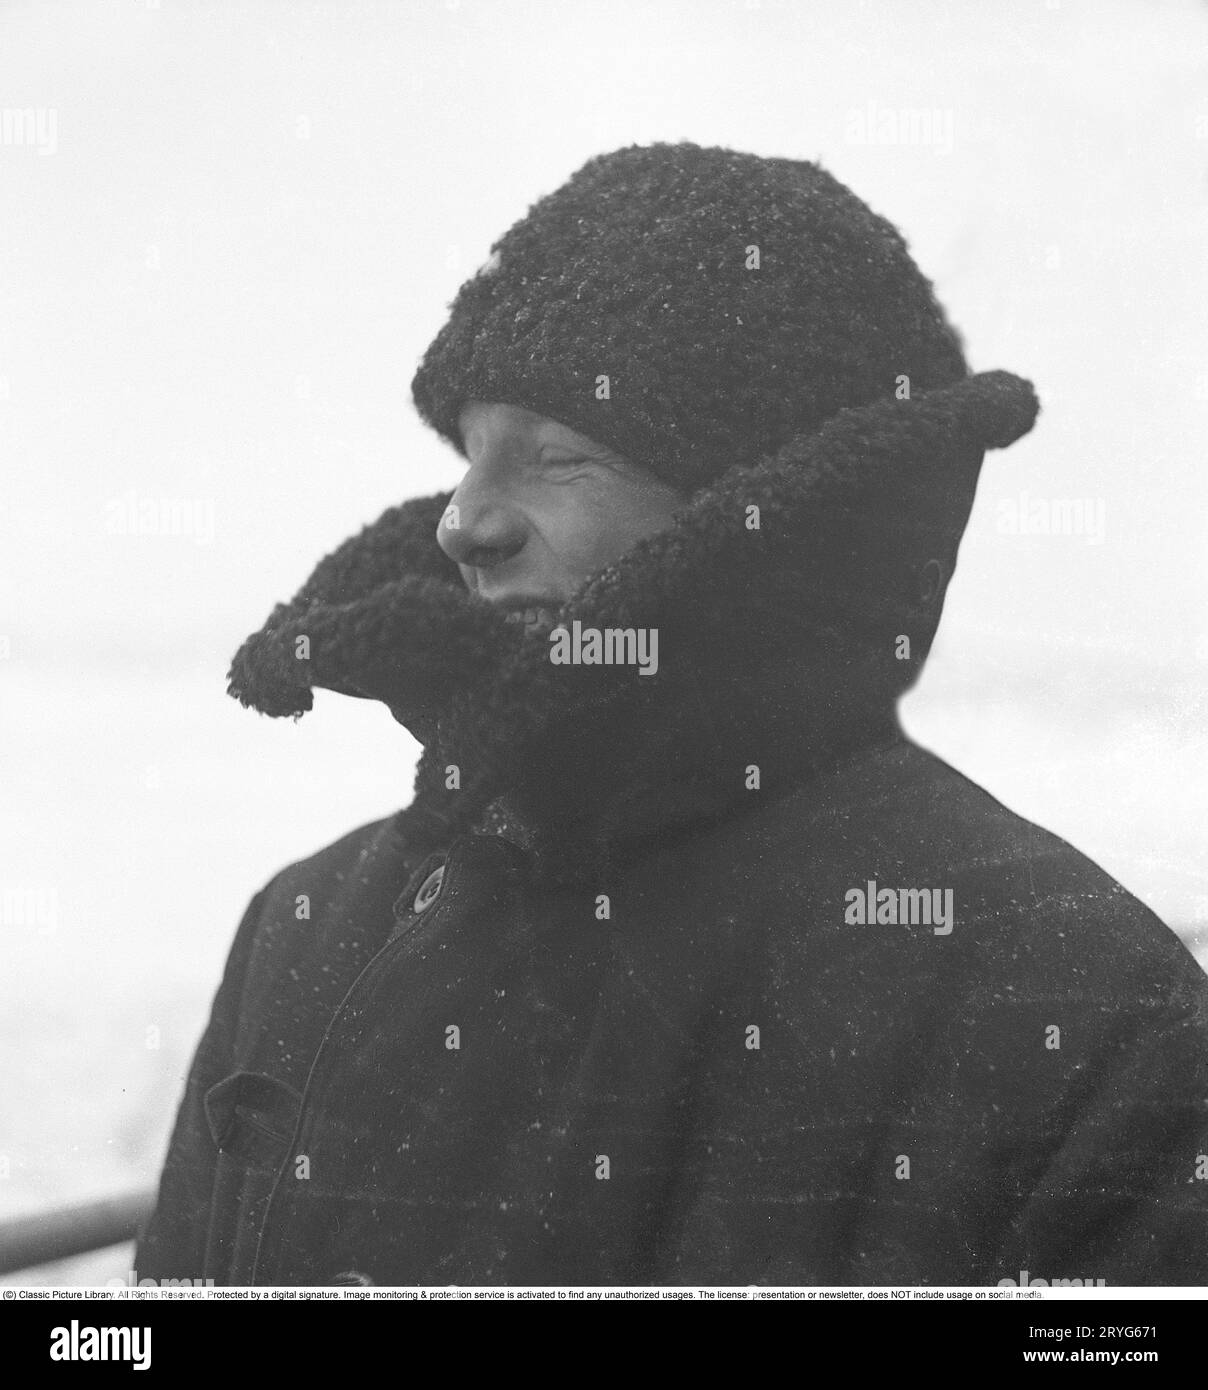 Winter auf See in den 1940er Jahren Ein Crewmitglied des schwedischen Eisbrechers Ymer, der im februar 1941 das Eis in den Binnengewässern an der schwedischen Küste bricht. Der Eisbrecher Ymer wurde 1931-1933 in Malmö gebaut und diente 44 Jahre lang als Eisbrecher, bis er 1976 verkauft und verschrottet wurde. Die Winter während des Zweiten Weltkriegs waren oft außergewöhnlich kalt und das Eis wurde zu einem großen Problem für die Schifffahrt und das Militär. Ymer war der erste große Eisbrecher auf See, der mit einem Diesel-Elektroantrieb ausgestattet war, eine Art, Schiffe anzutreiben, die heute üblich sind. Die Winter während der Zeit des W Stockfoto